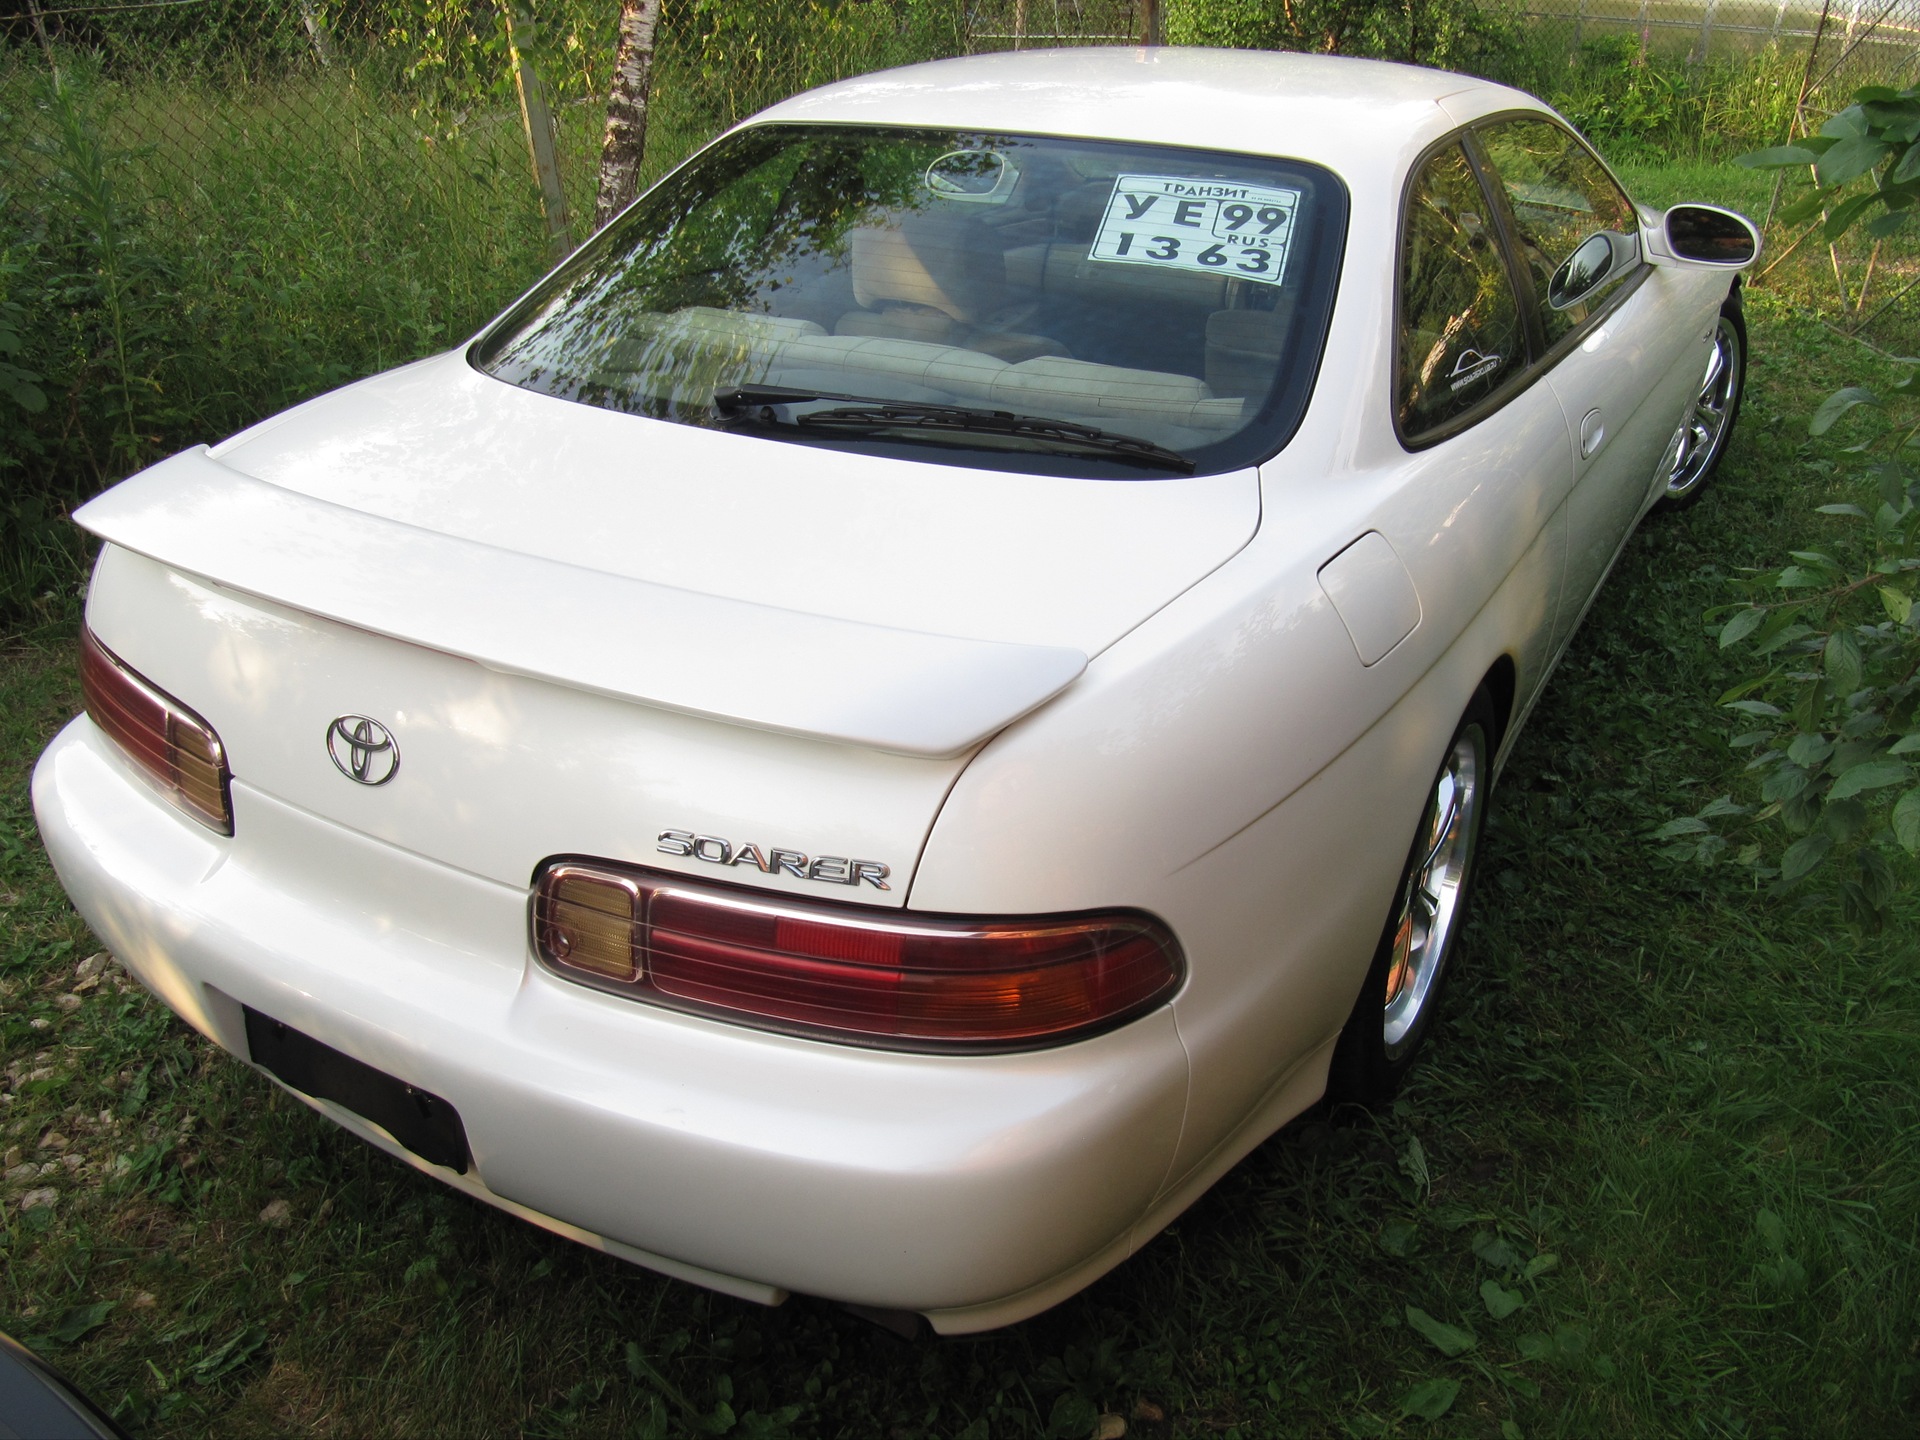    Toyota Soarer 25 1997 